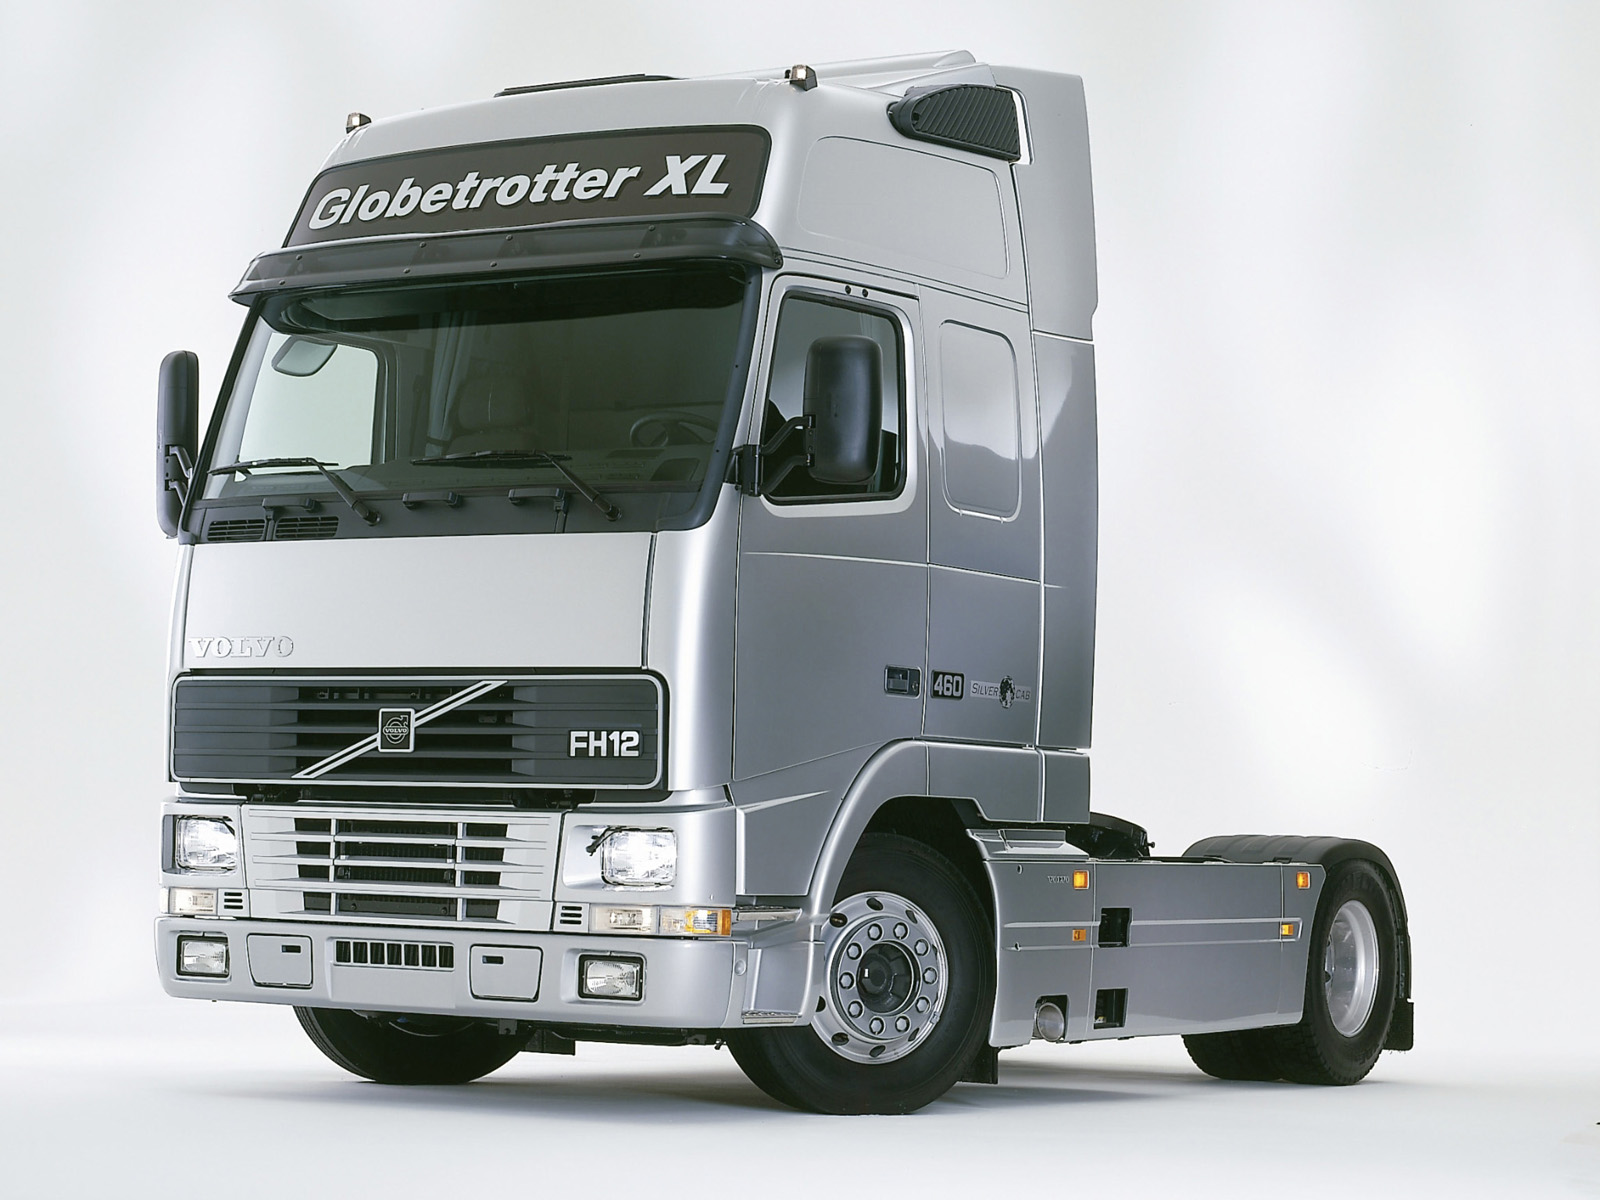 1995, Volvo, Fh12, Globetrotter, X l, Silver, Cab, Semi, Tractor Wallpaper